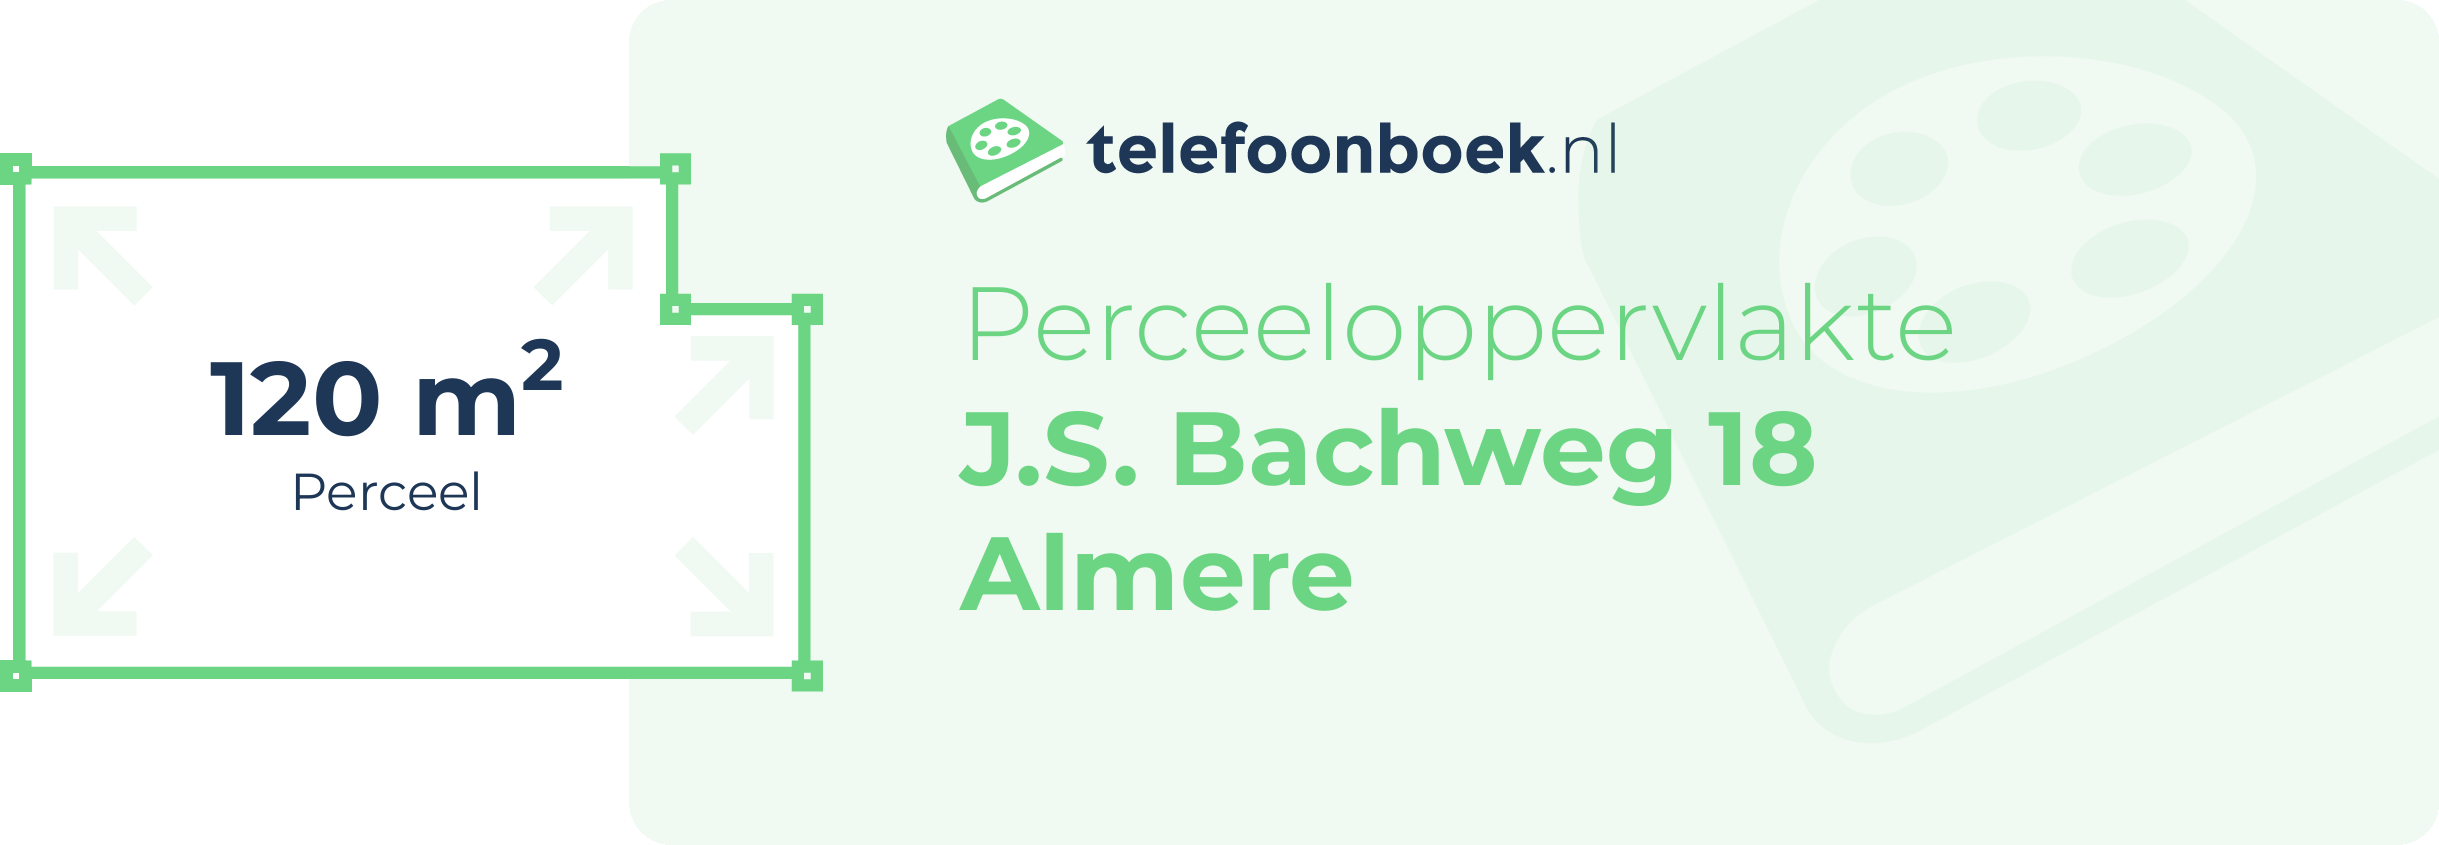 Perceeloppervlakte J.S. Bachweg 18 Almere